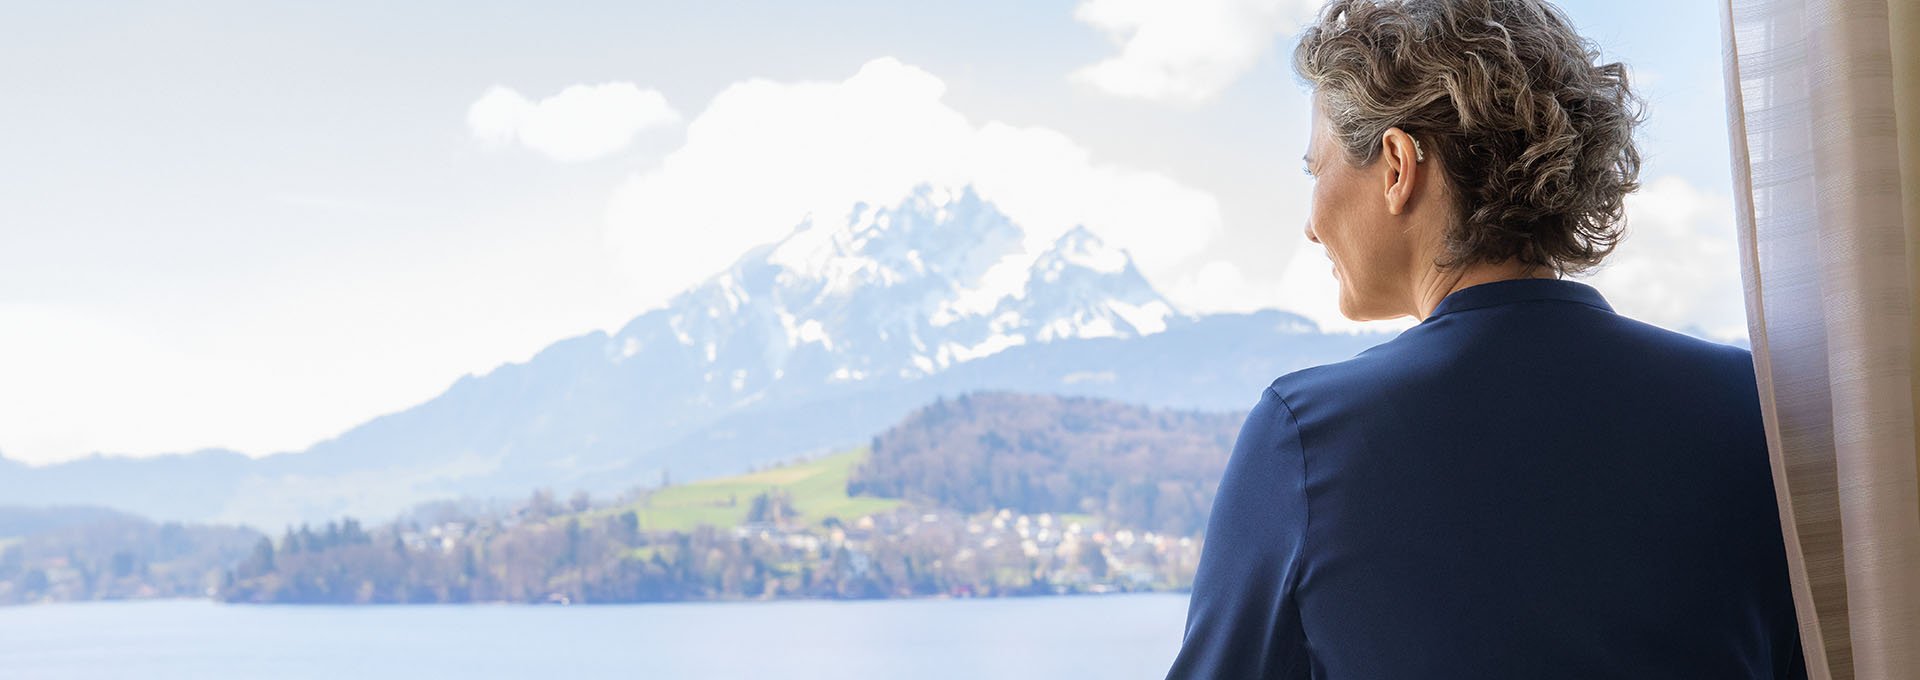 Kobieta nosząca aparat słuchowy Bernafon Alpha cieszy się widokiem szwajcarskiego jeziora i gór z okna hotelu